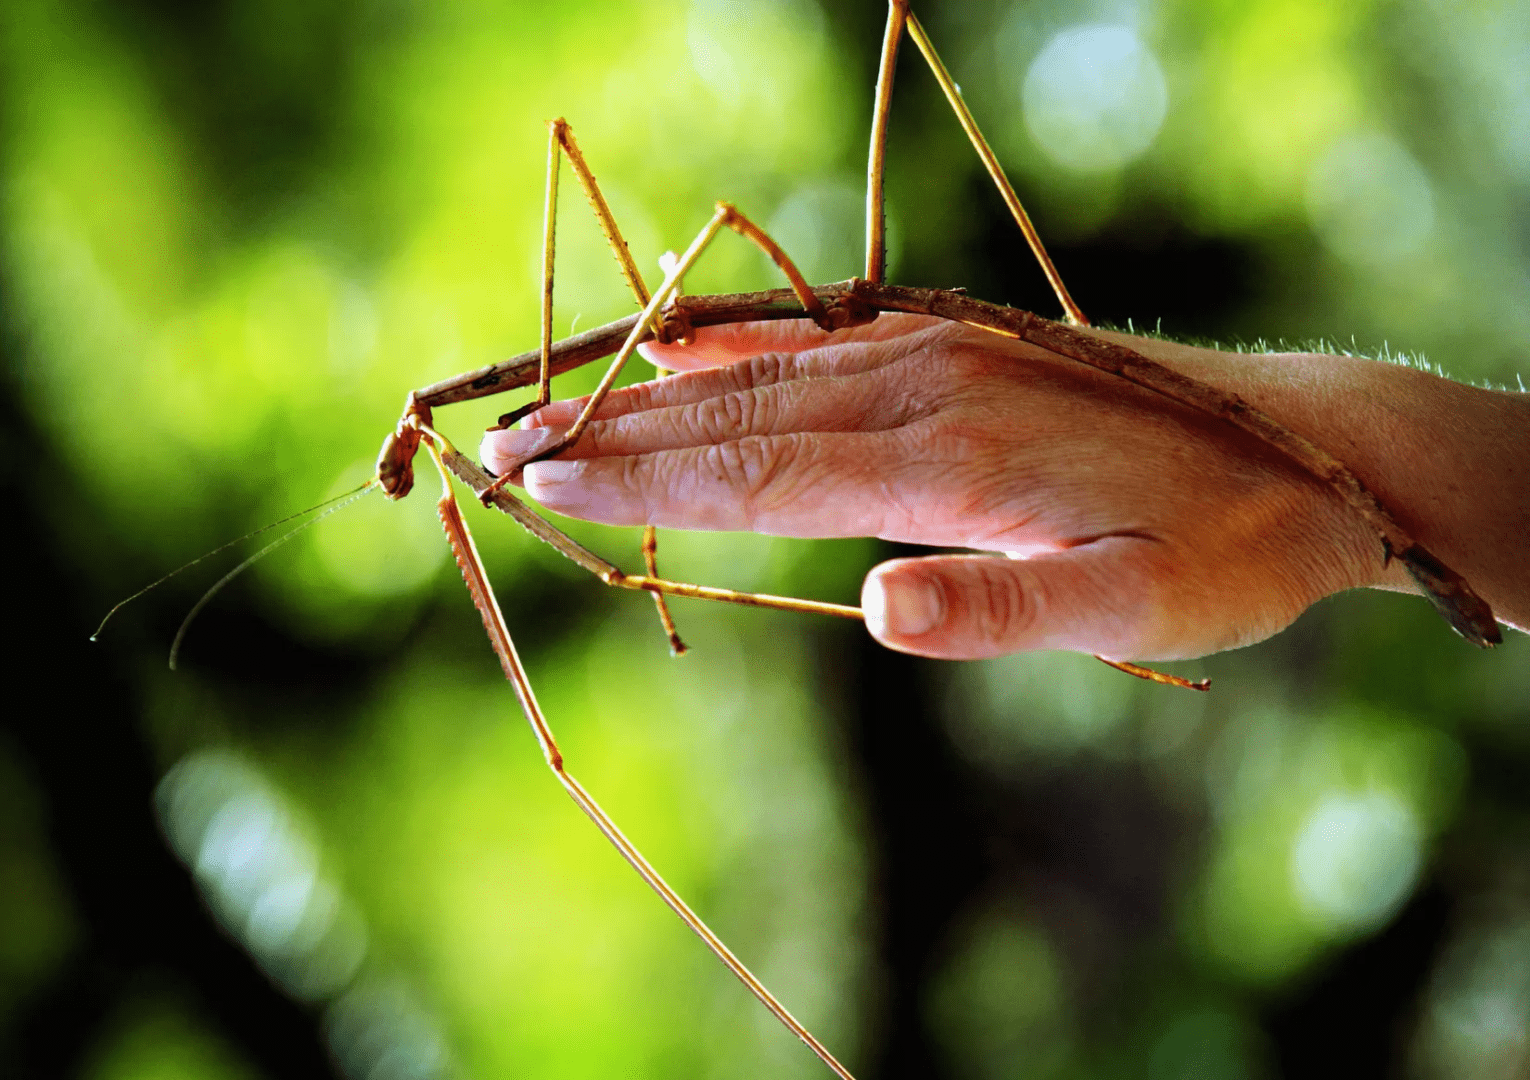 Maiores insetos do mundo - 10 animais que surpreendem pelo tamanho